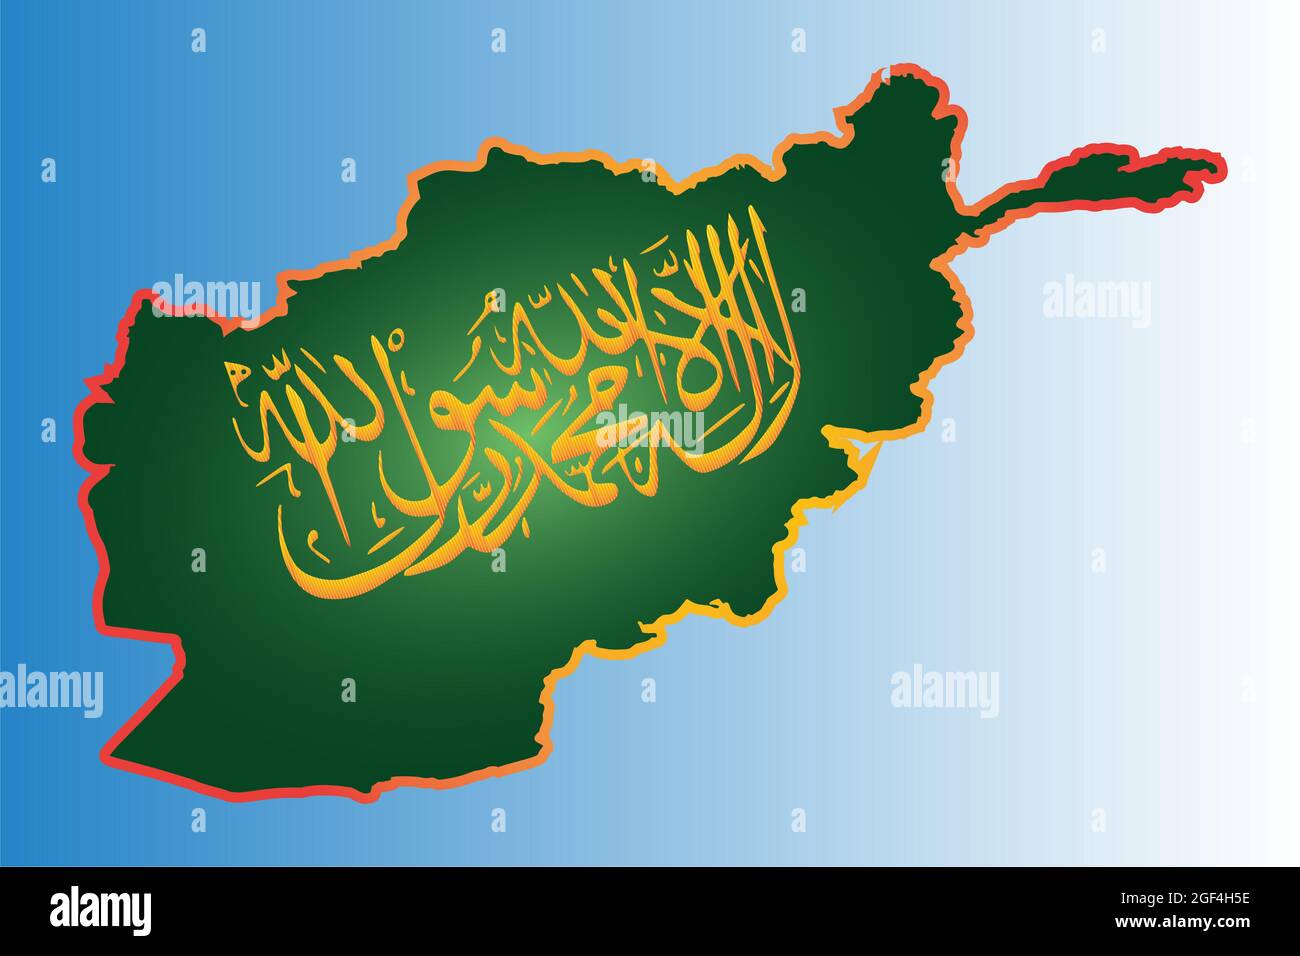 Kalligrafische Schreibweise der Taliban Shahada der Islamischen Republik Afghanistan auf einer Übersichtskarte. Inschrift auf grünem Hintergrund. Stockfoto